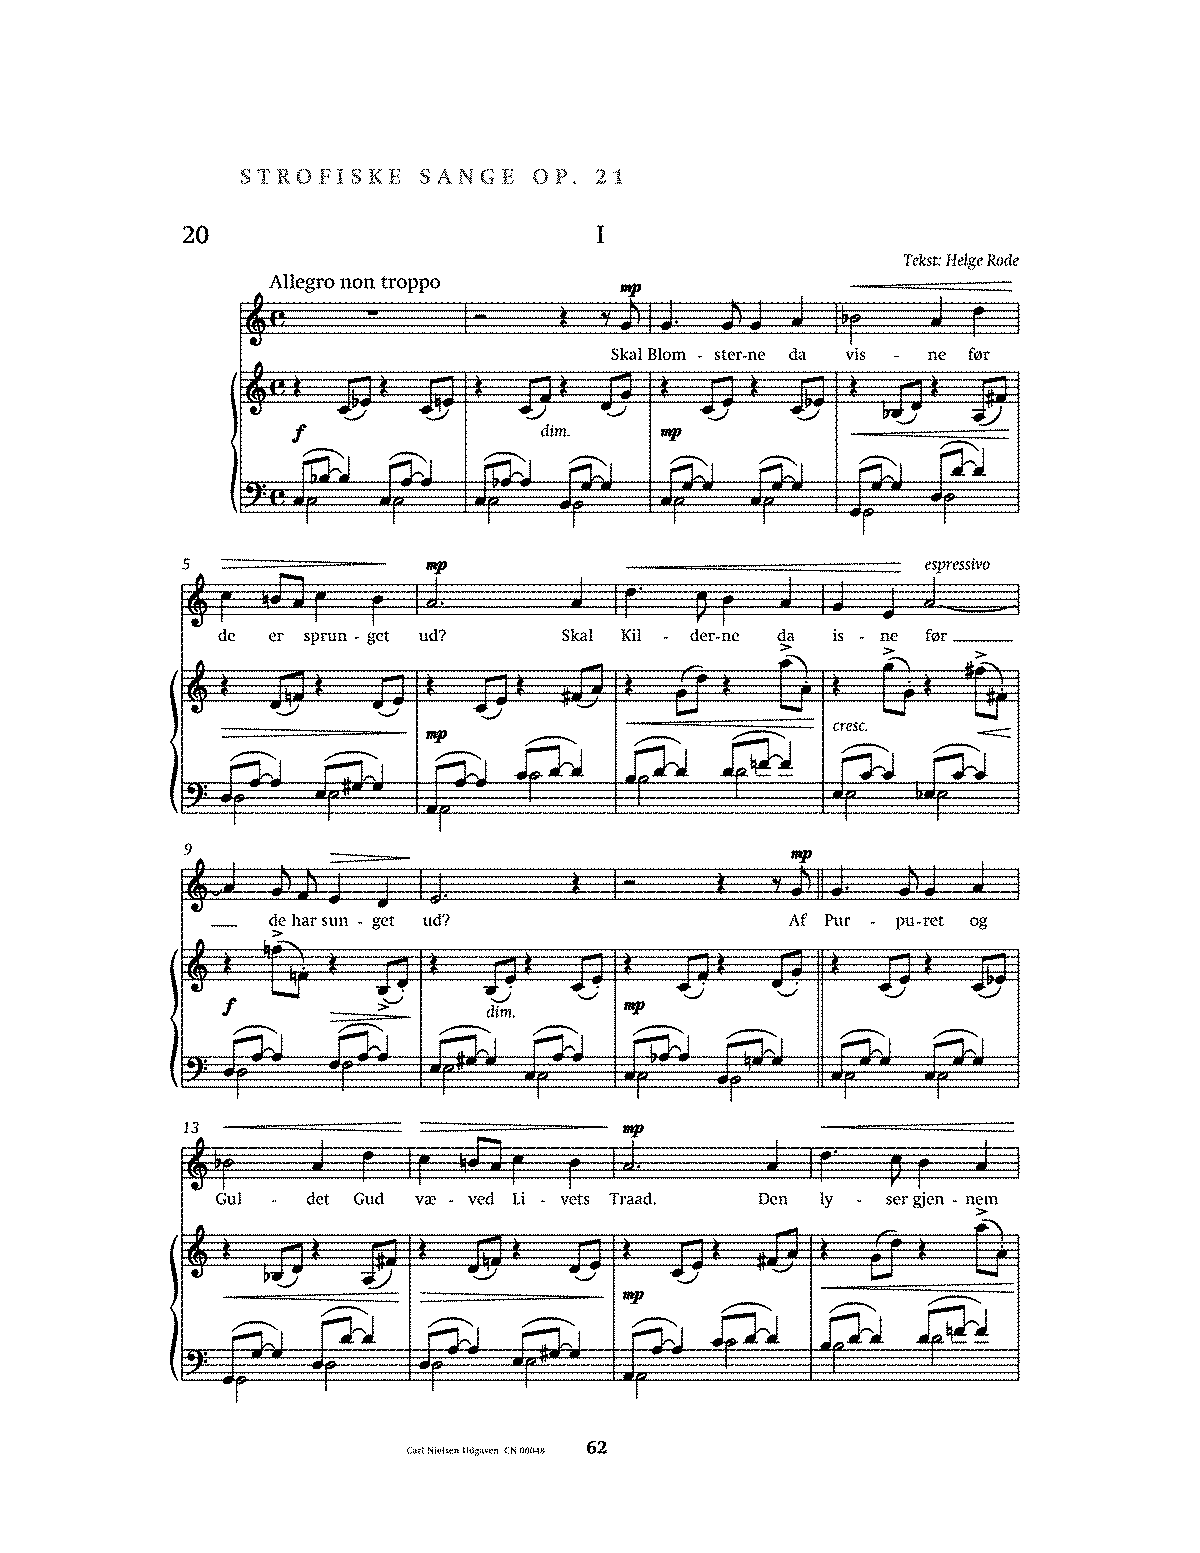 Strophic Songs, Op.21 (Nielsen, Carl) IMSLP